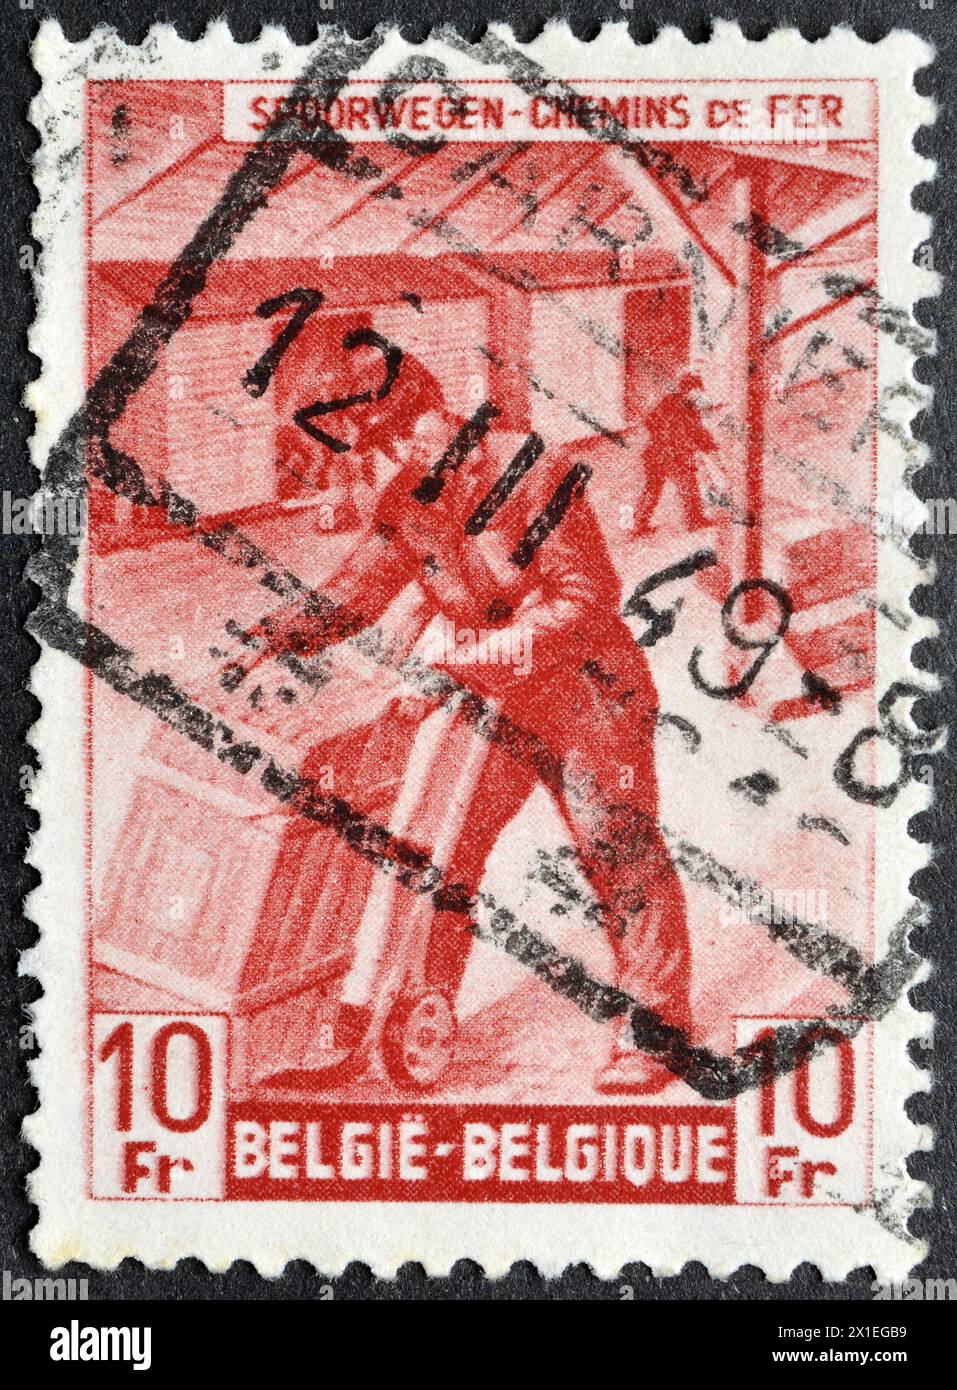 Gestohlene Briefmarke, gedruckt von Belgien, auf der die Bahnmarke: Box-Shipper, um 1949 zu sehen ist. Stockfoto